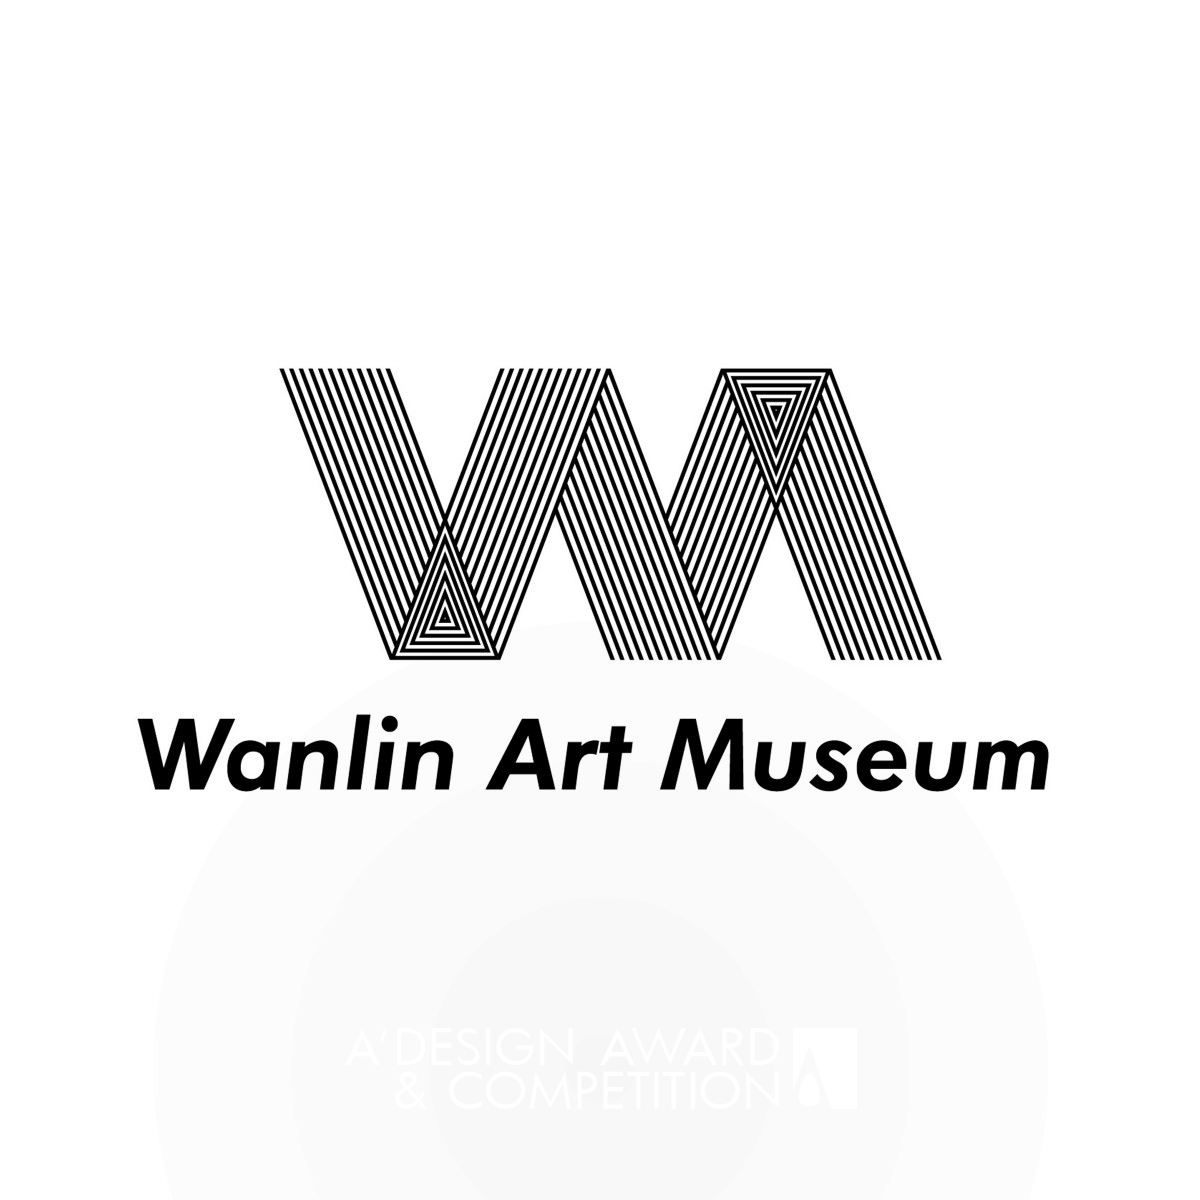 Wanlin Art Museum